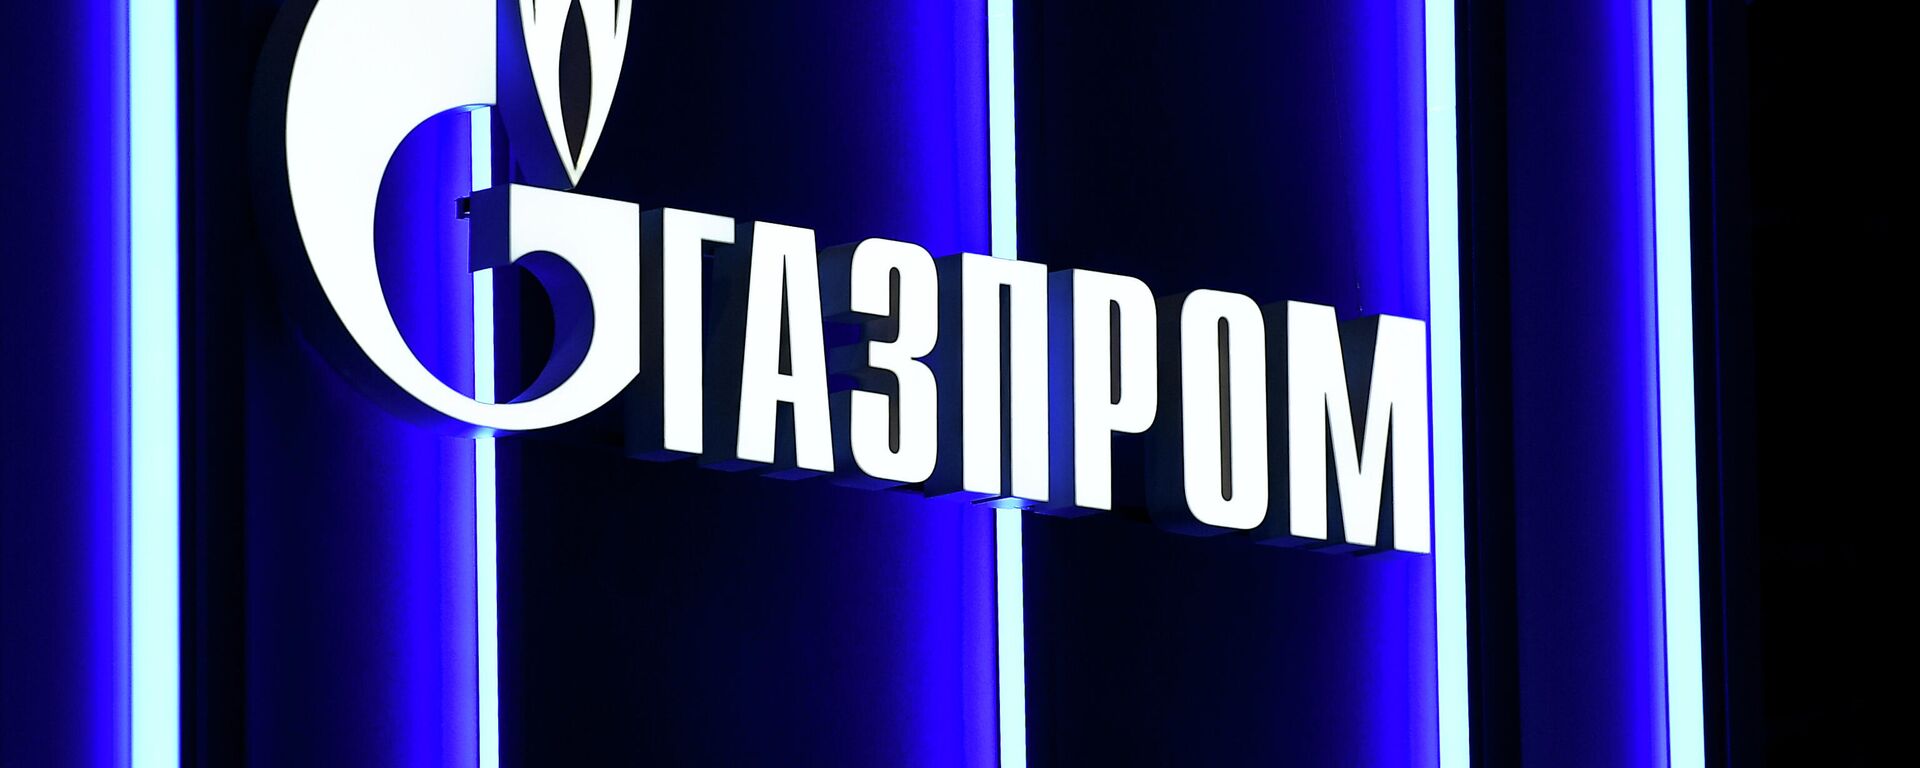 Логотип компании Газпром, архивное фото - Sputnik Литва, 1920, 19.07.2021